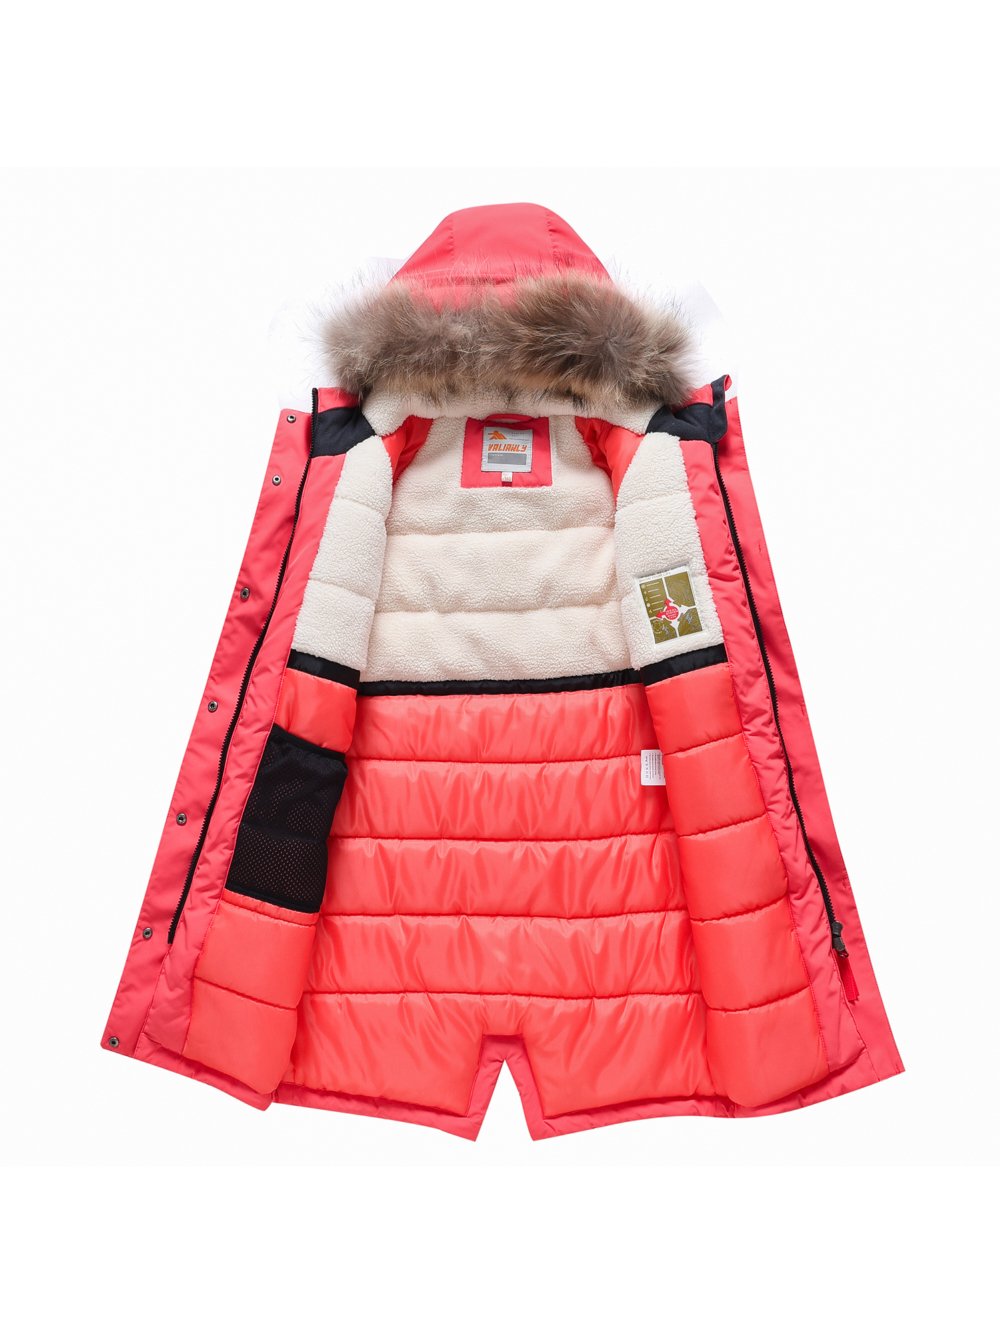 Купить куртку парку для девочки оптом от производителя недорого в Москве 9342Sz 1